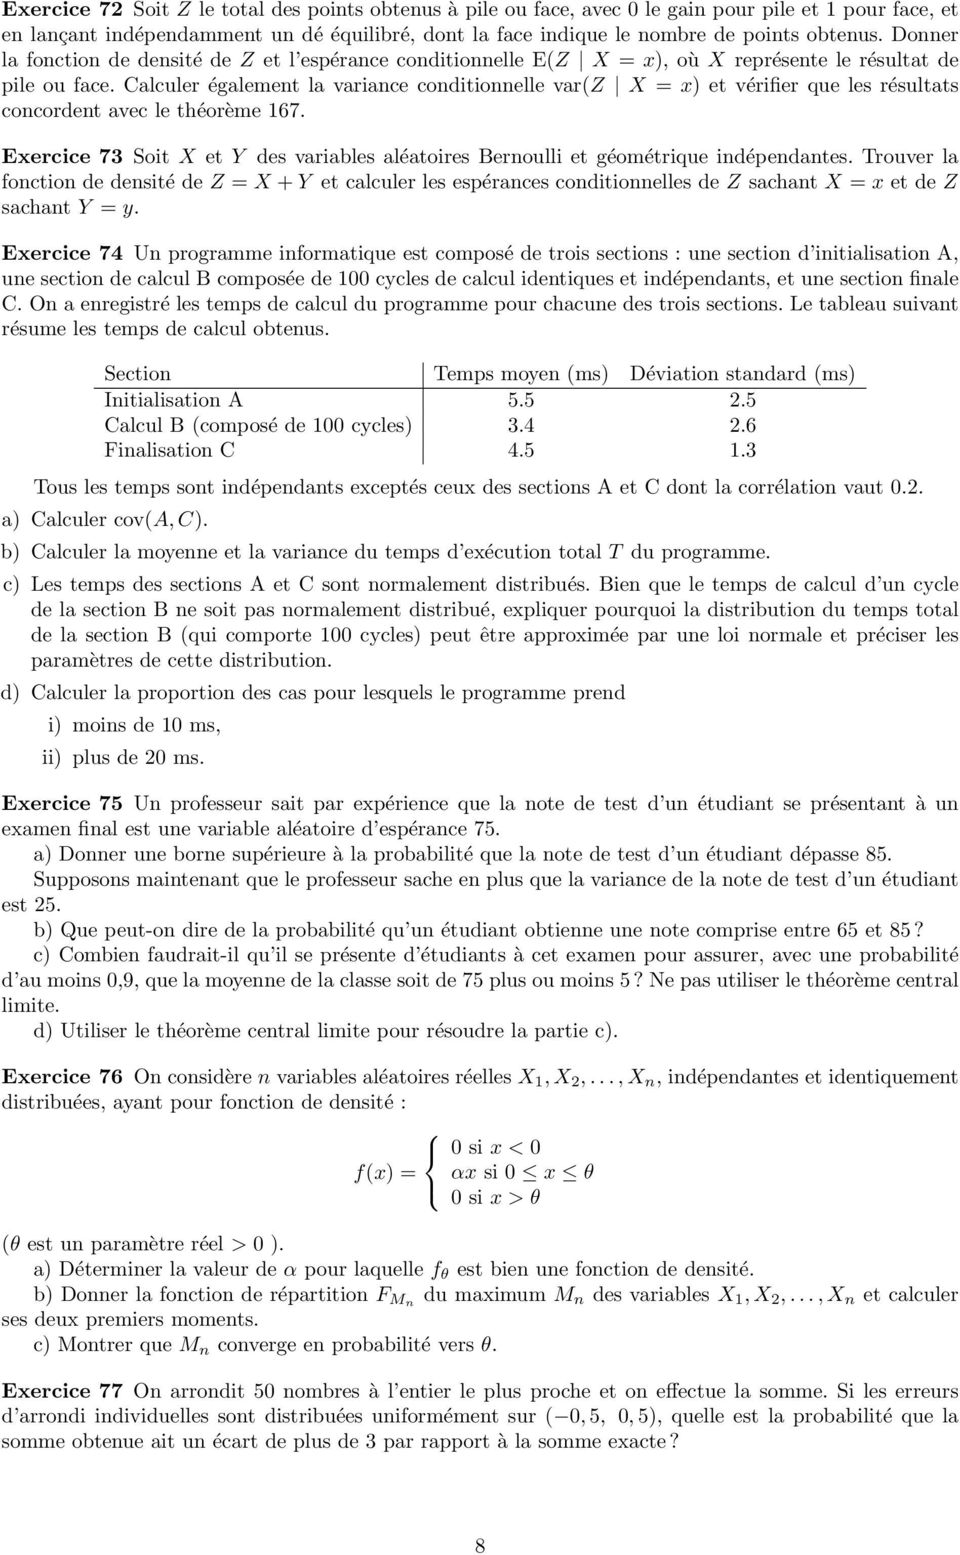 Calculer également la variance conditionnelle var(z X = x) et vérifier que les résultats concordent avec le théorème 67.